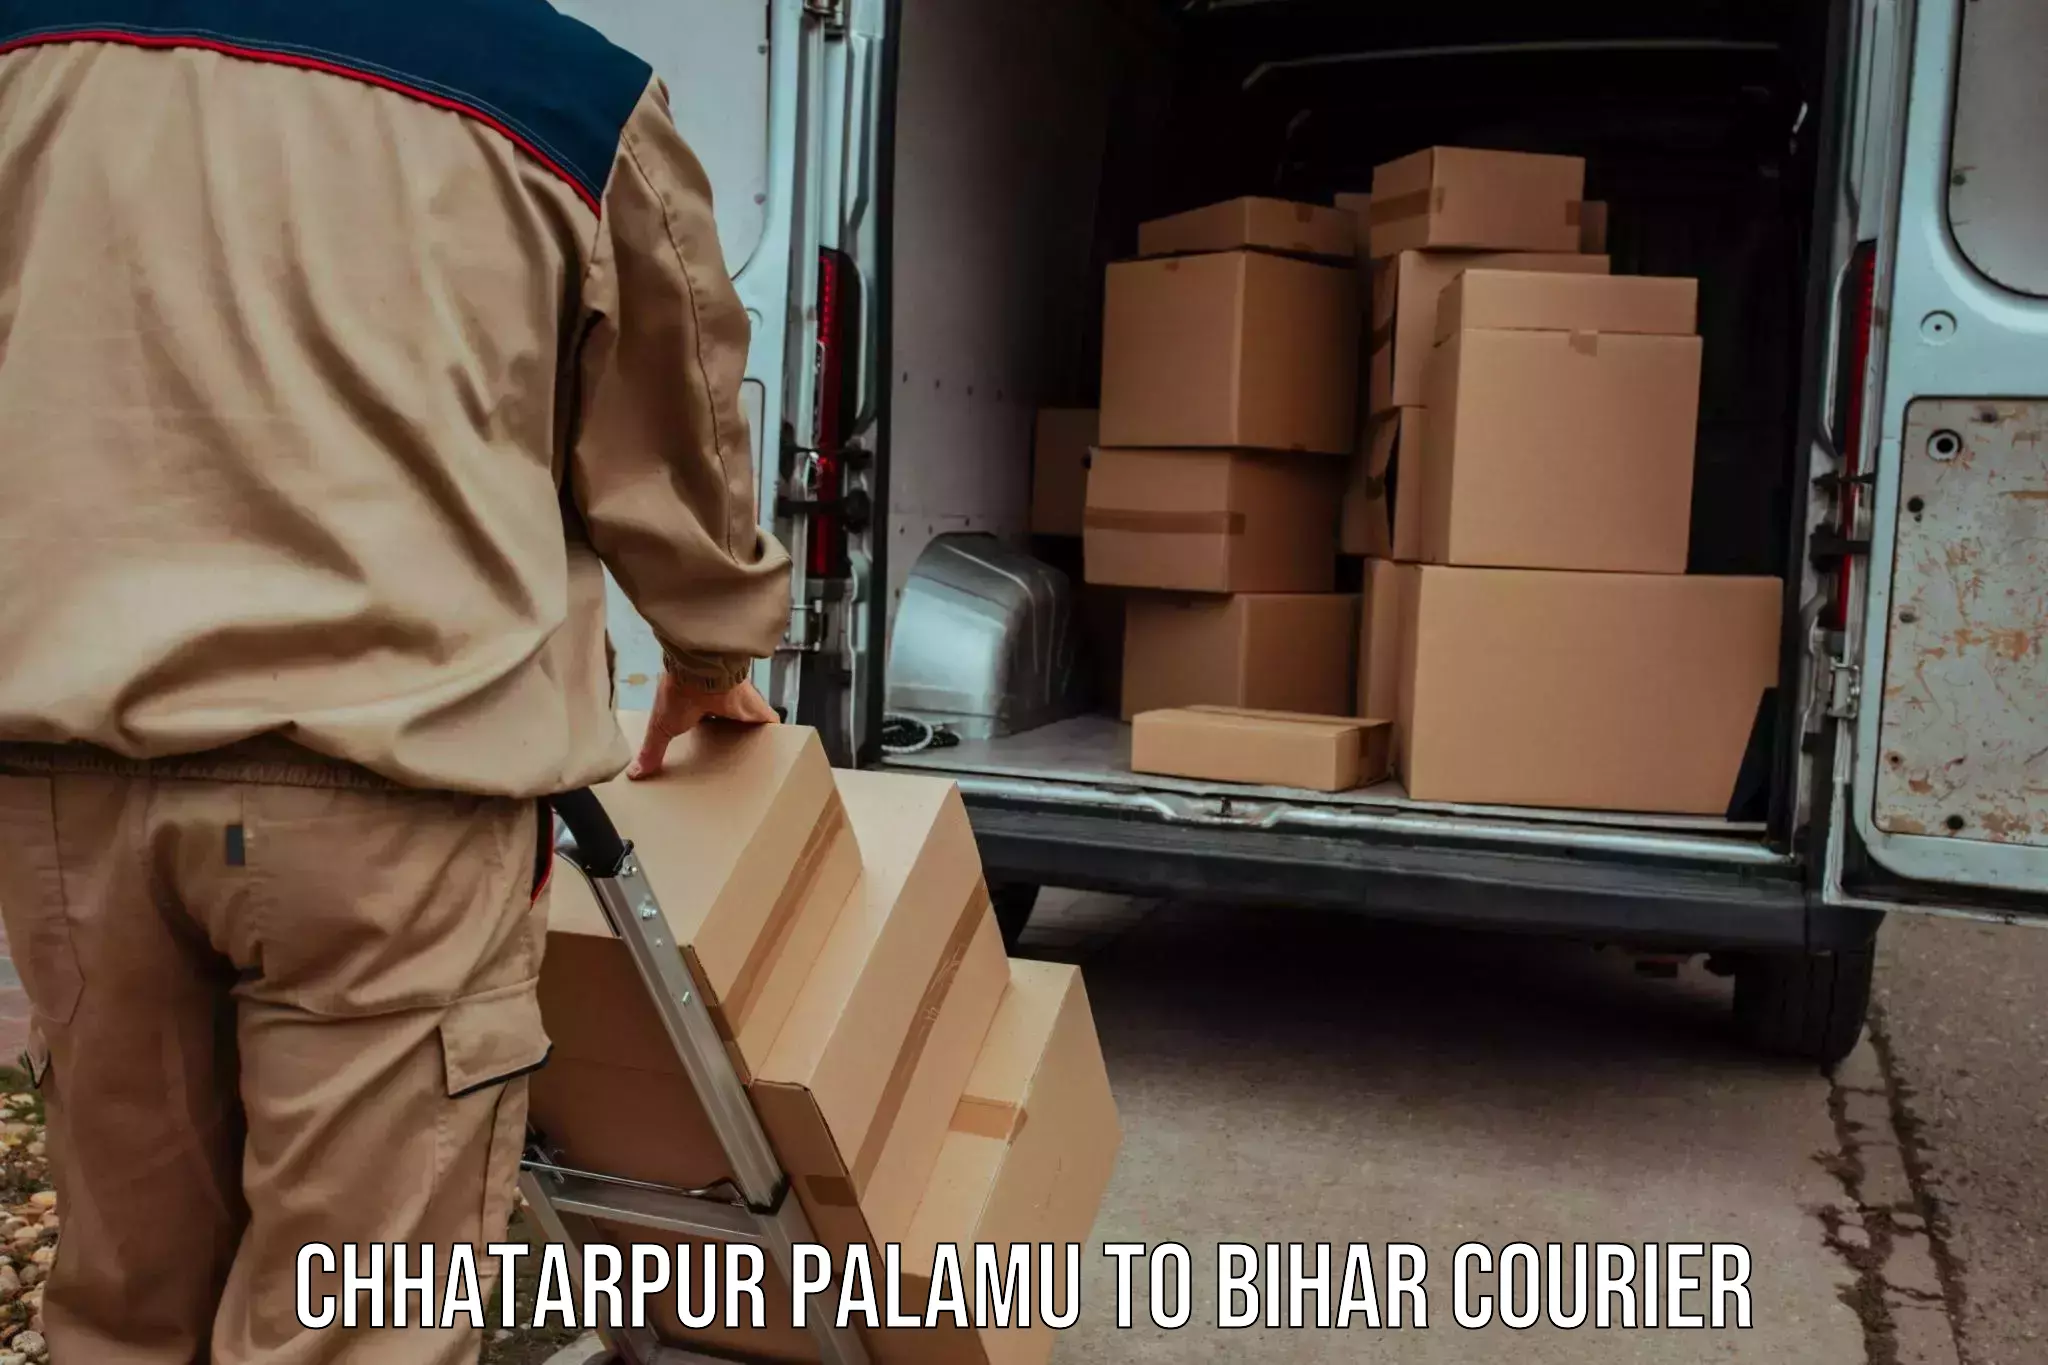 24/7 courier service Chhatarpur Palamu to Bihar Sharif